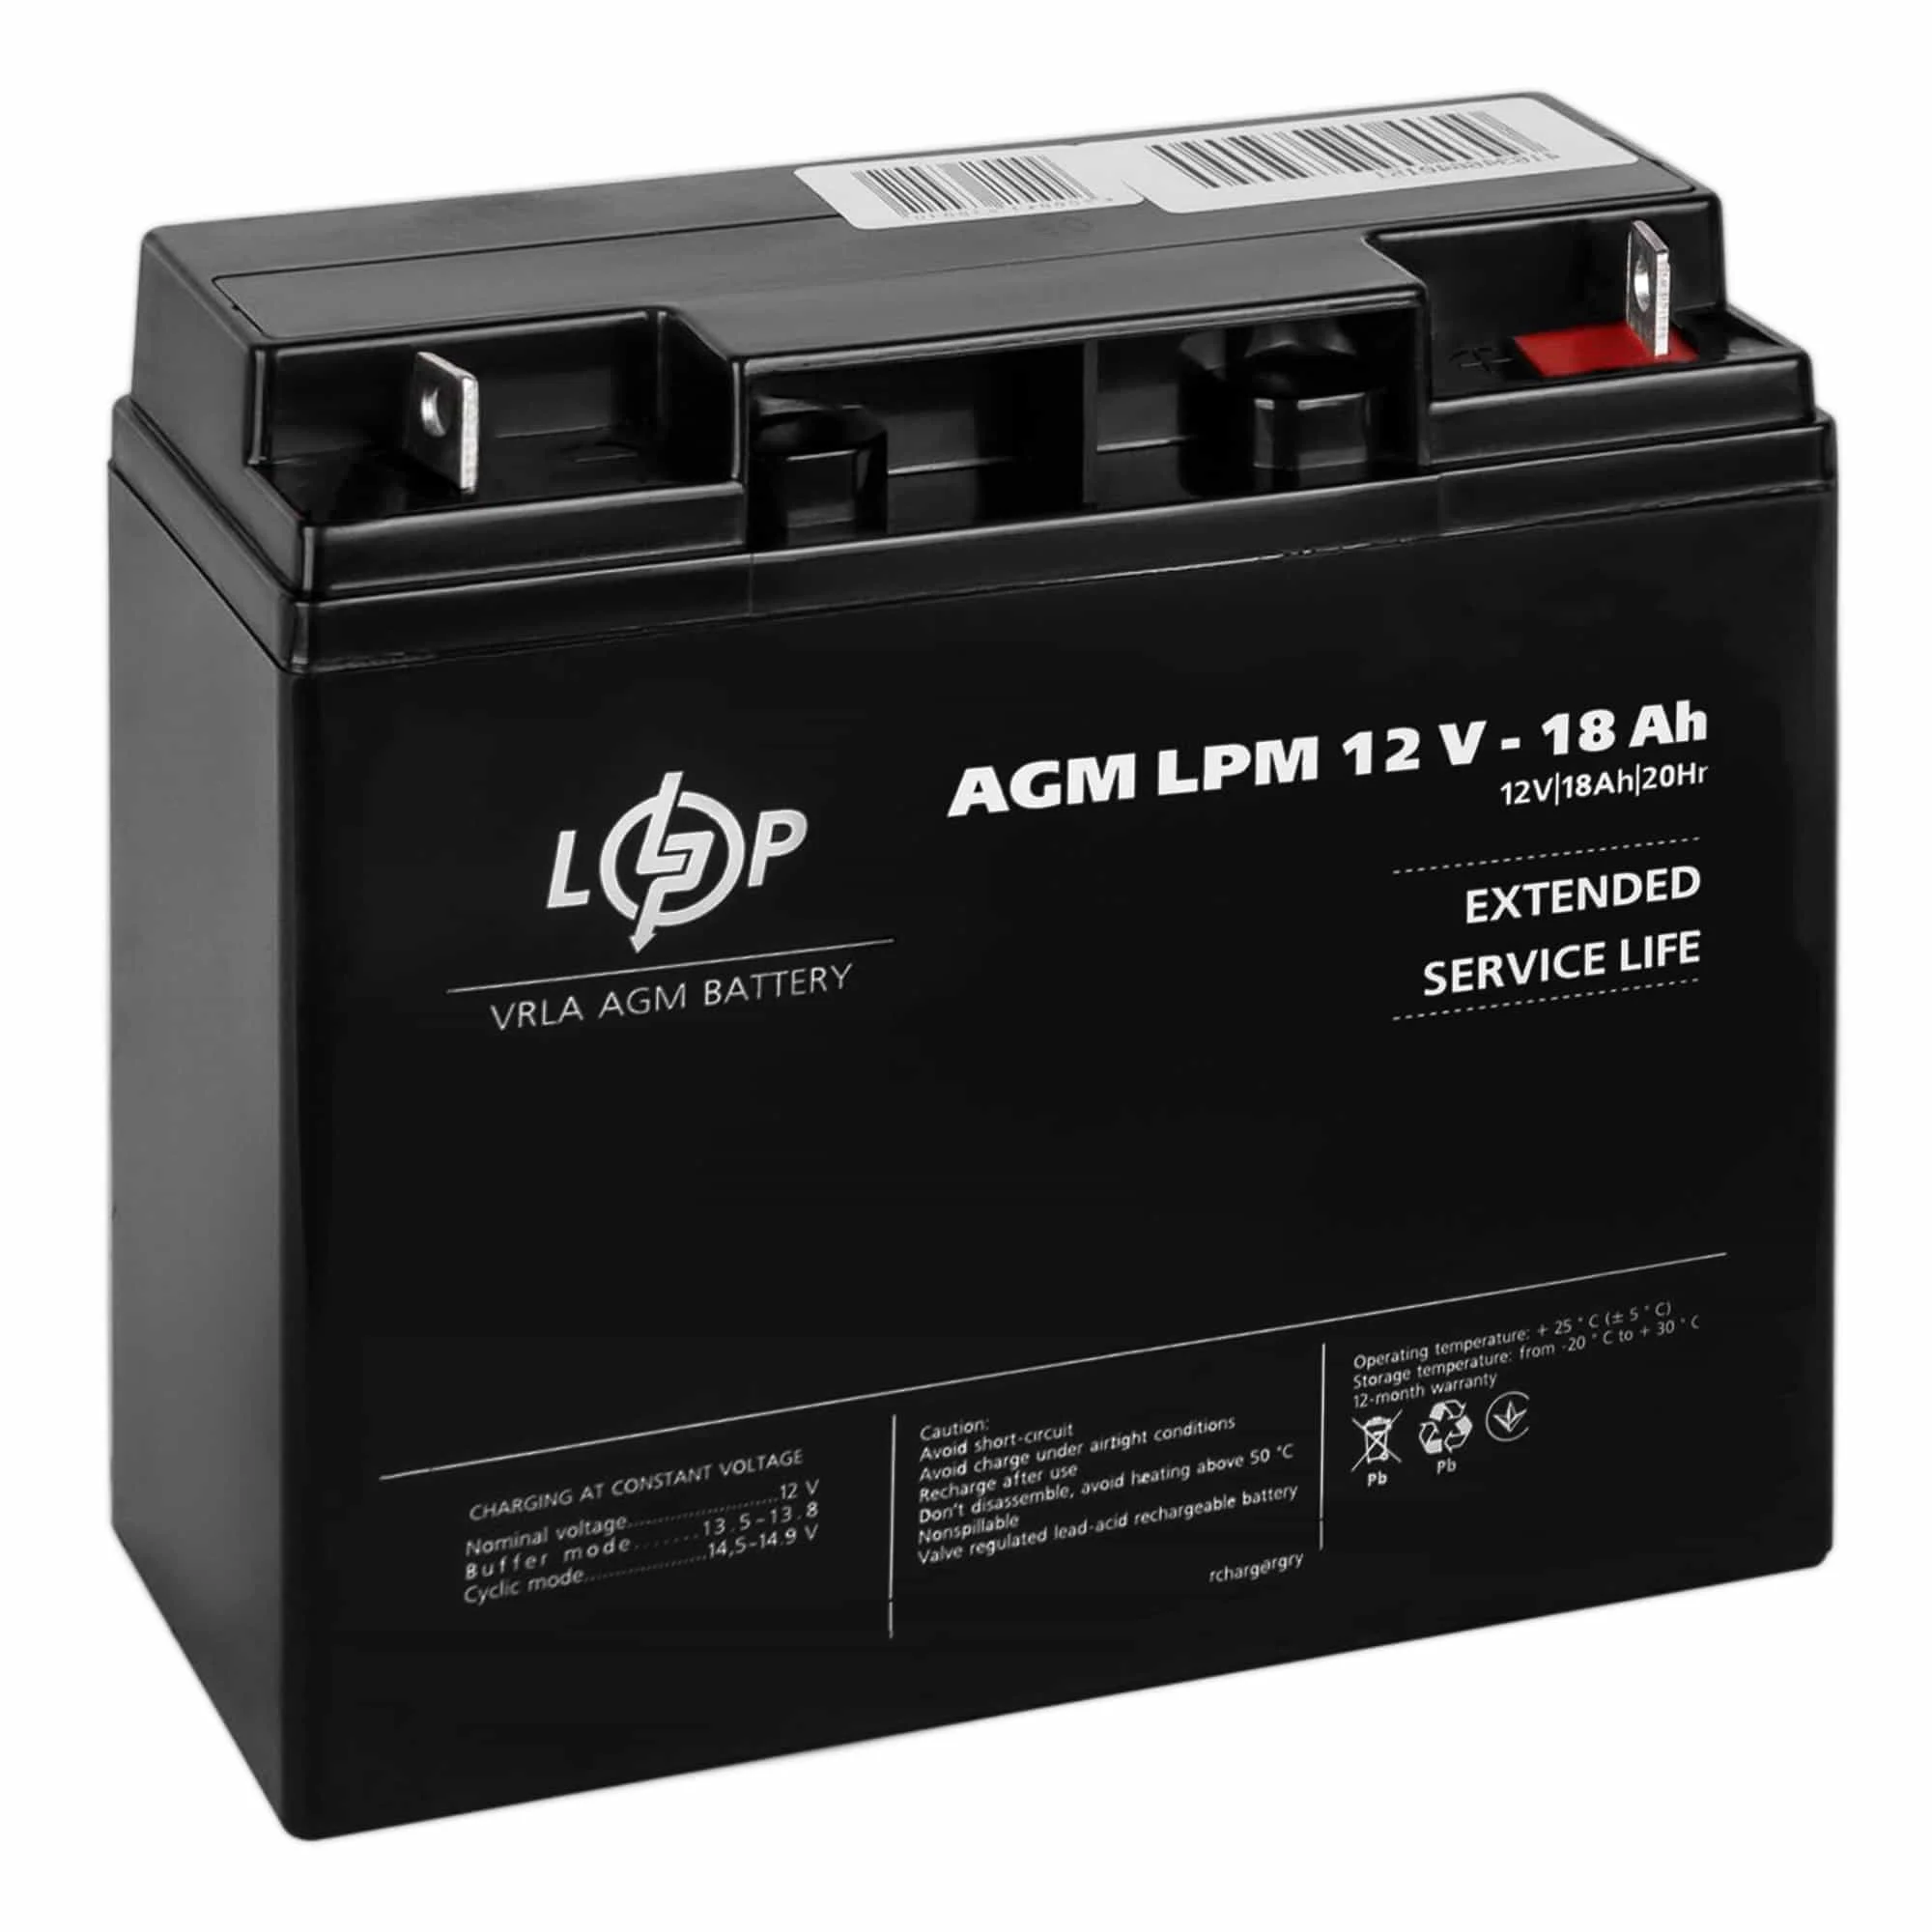 Аккумулятор Logic Power LPM 6CT-18Ah AGM АзЕ (LP10753)